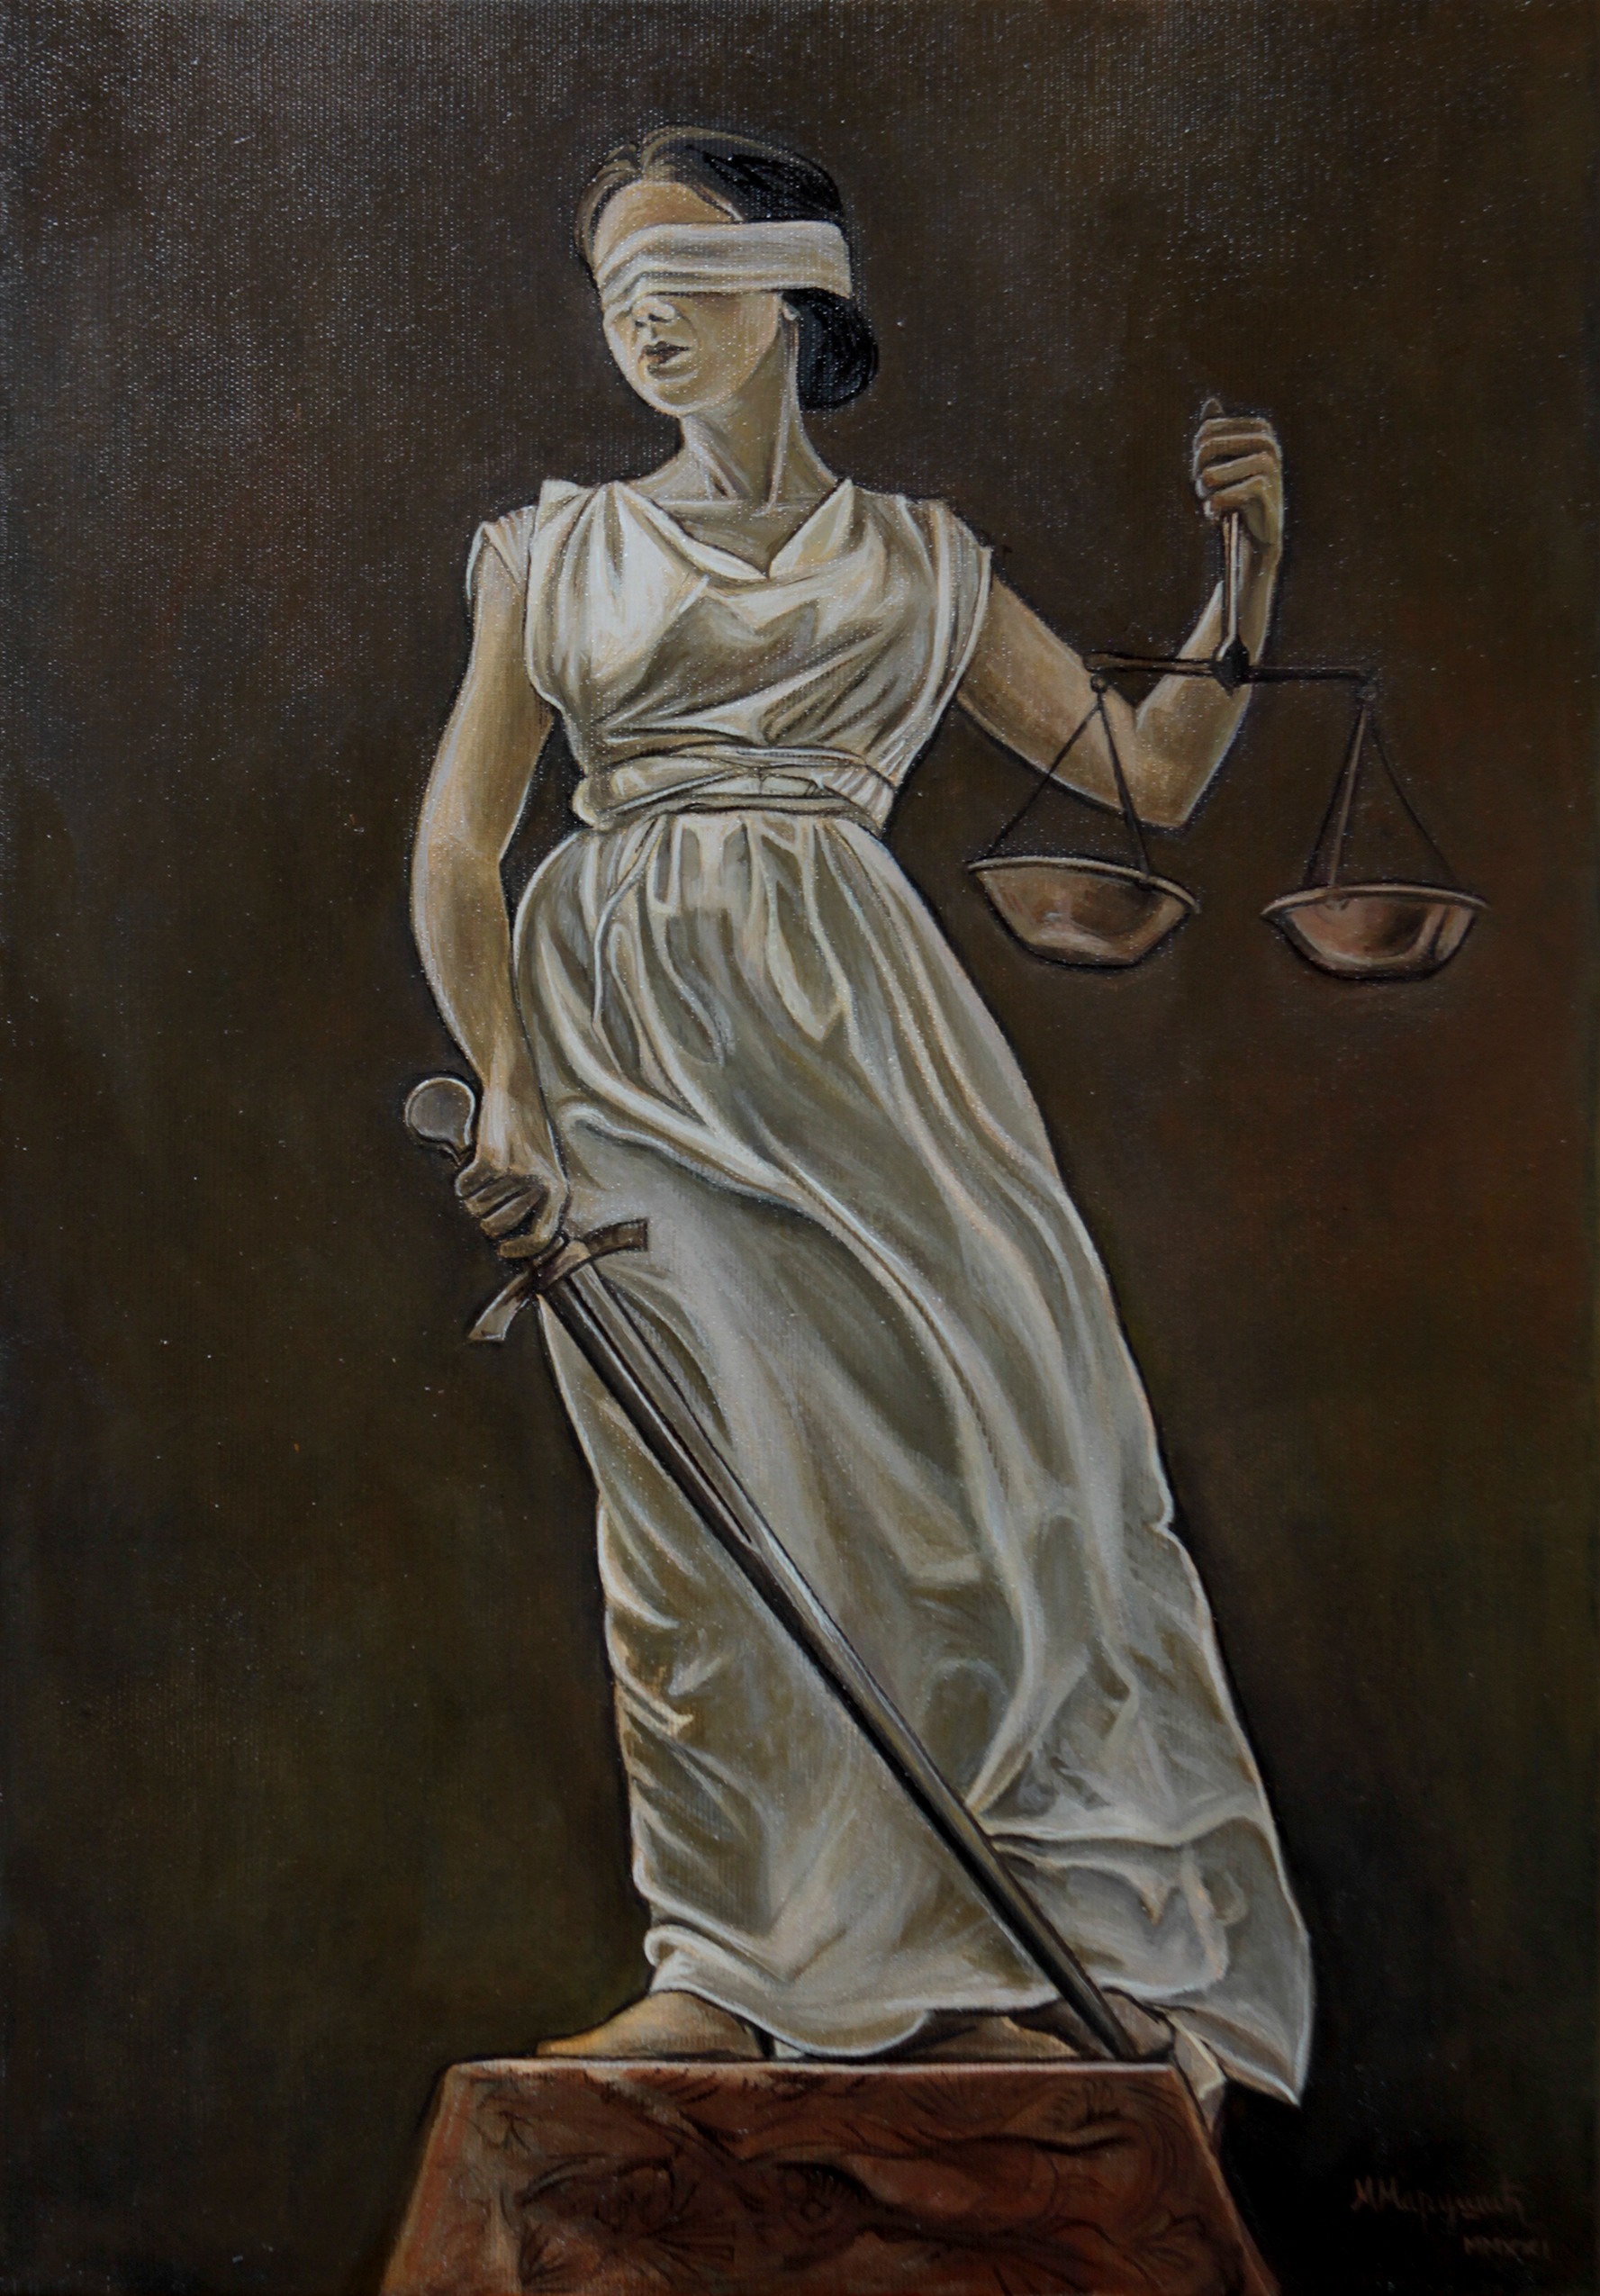 Justicija - 50x35cm Ulje na platnu po narudžbini - Figuracija - Umetnička slika umetnik Milica MARUŠIĆ